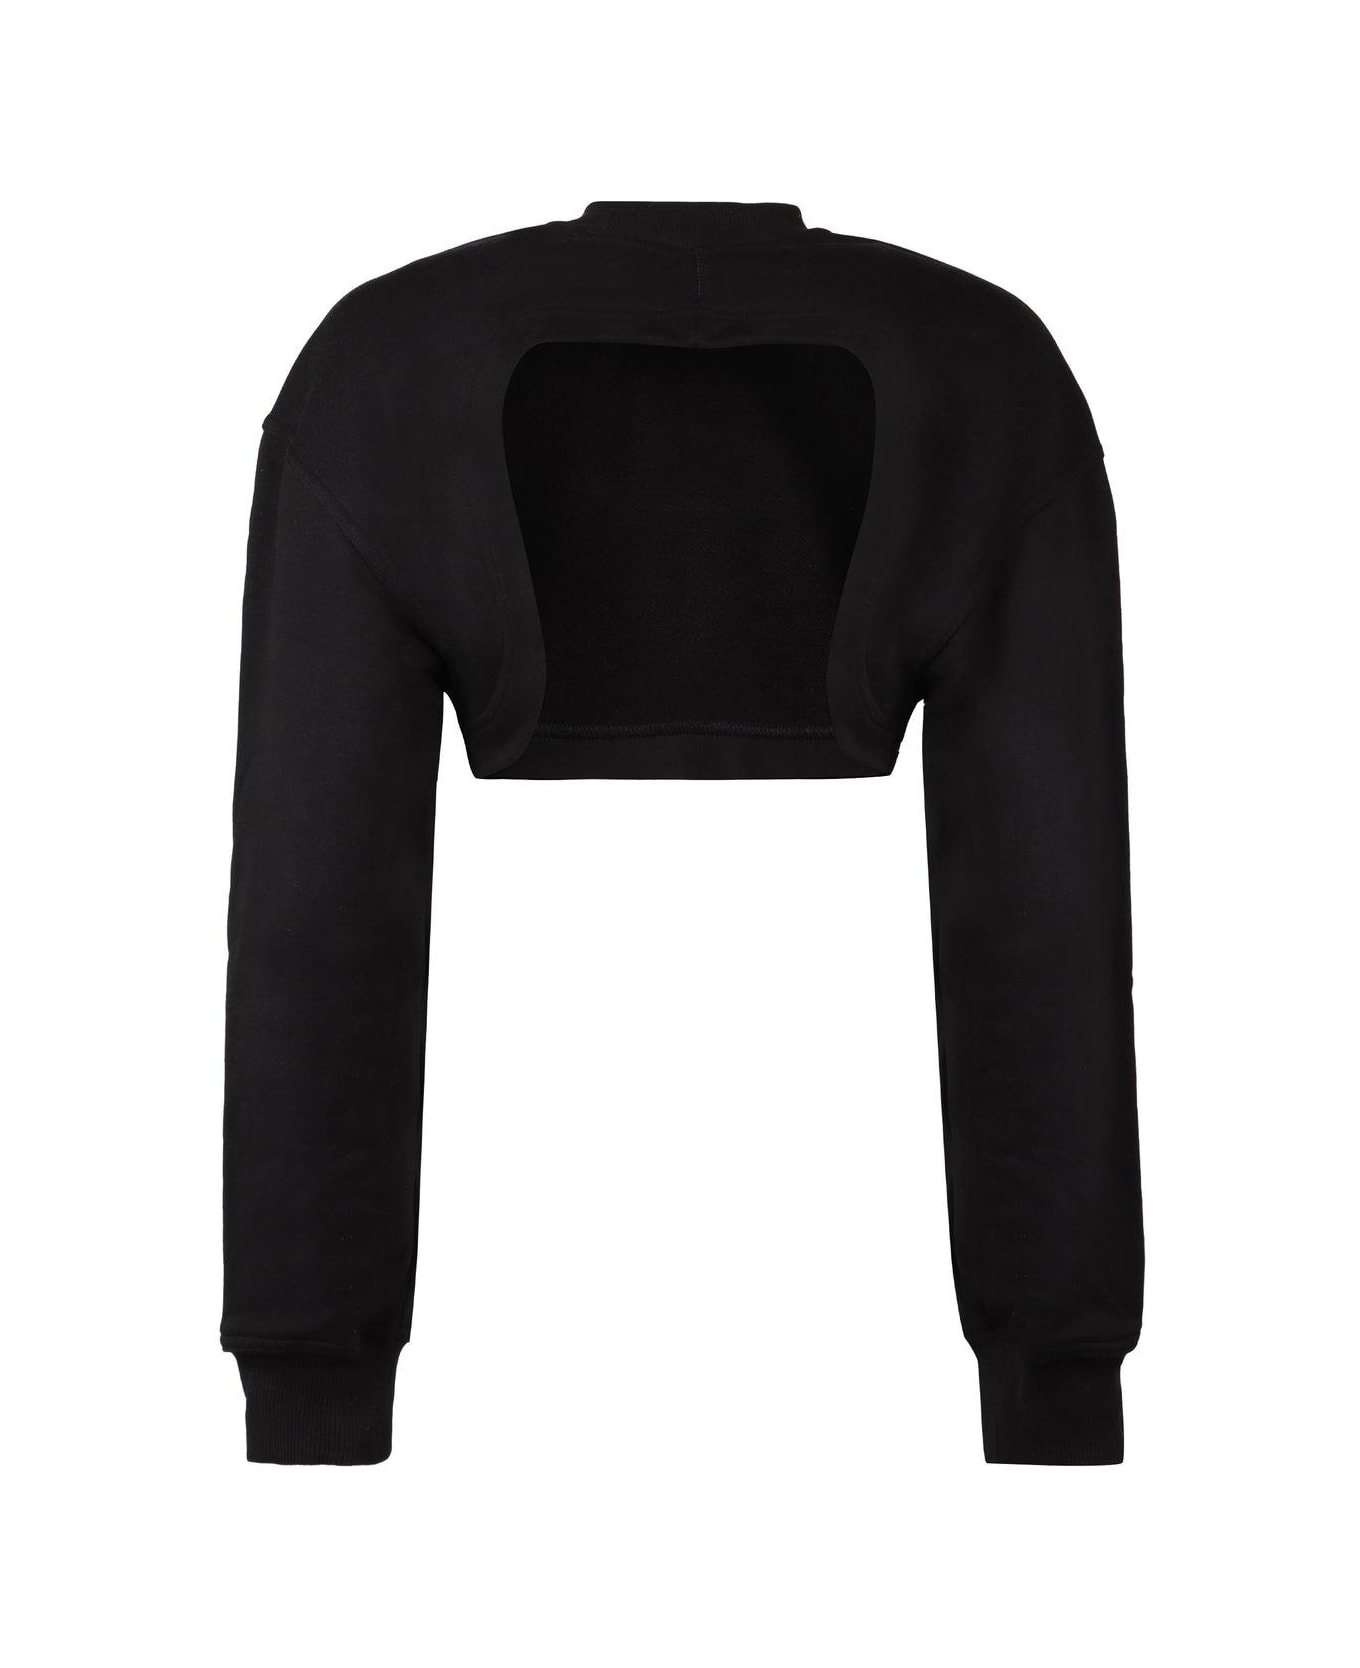 Adidas by Stella McCartney Crewneck Cropped Sweatshirt - Black